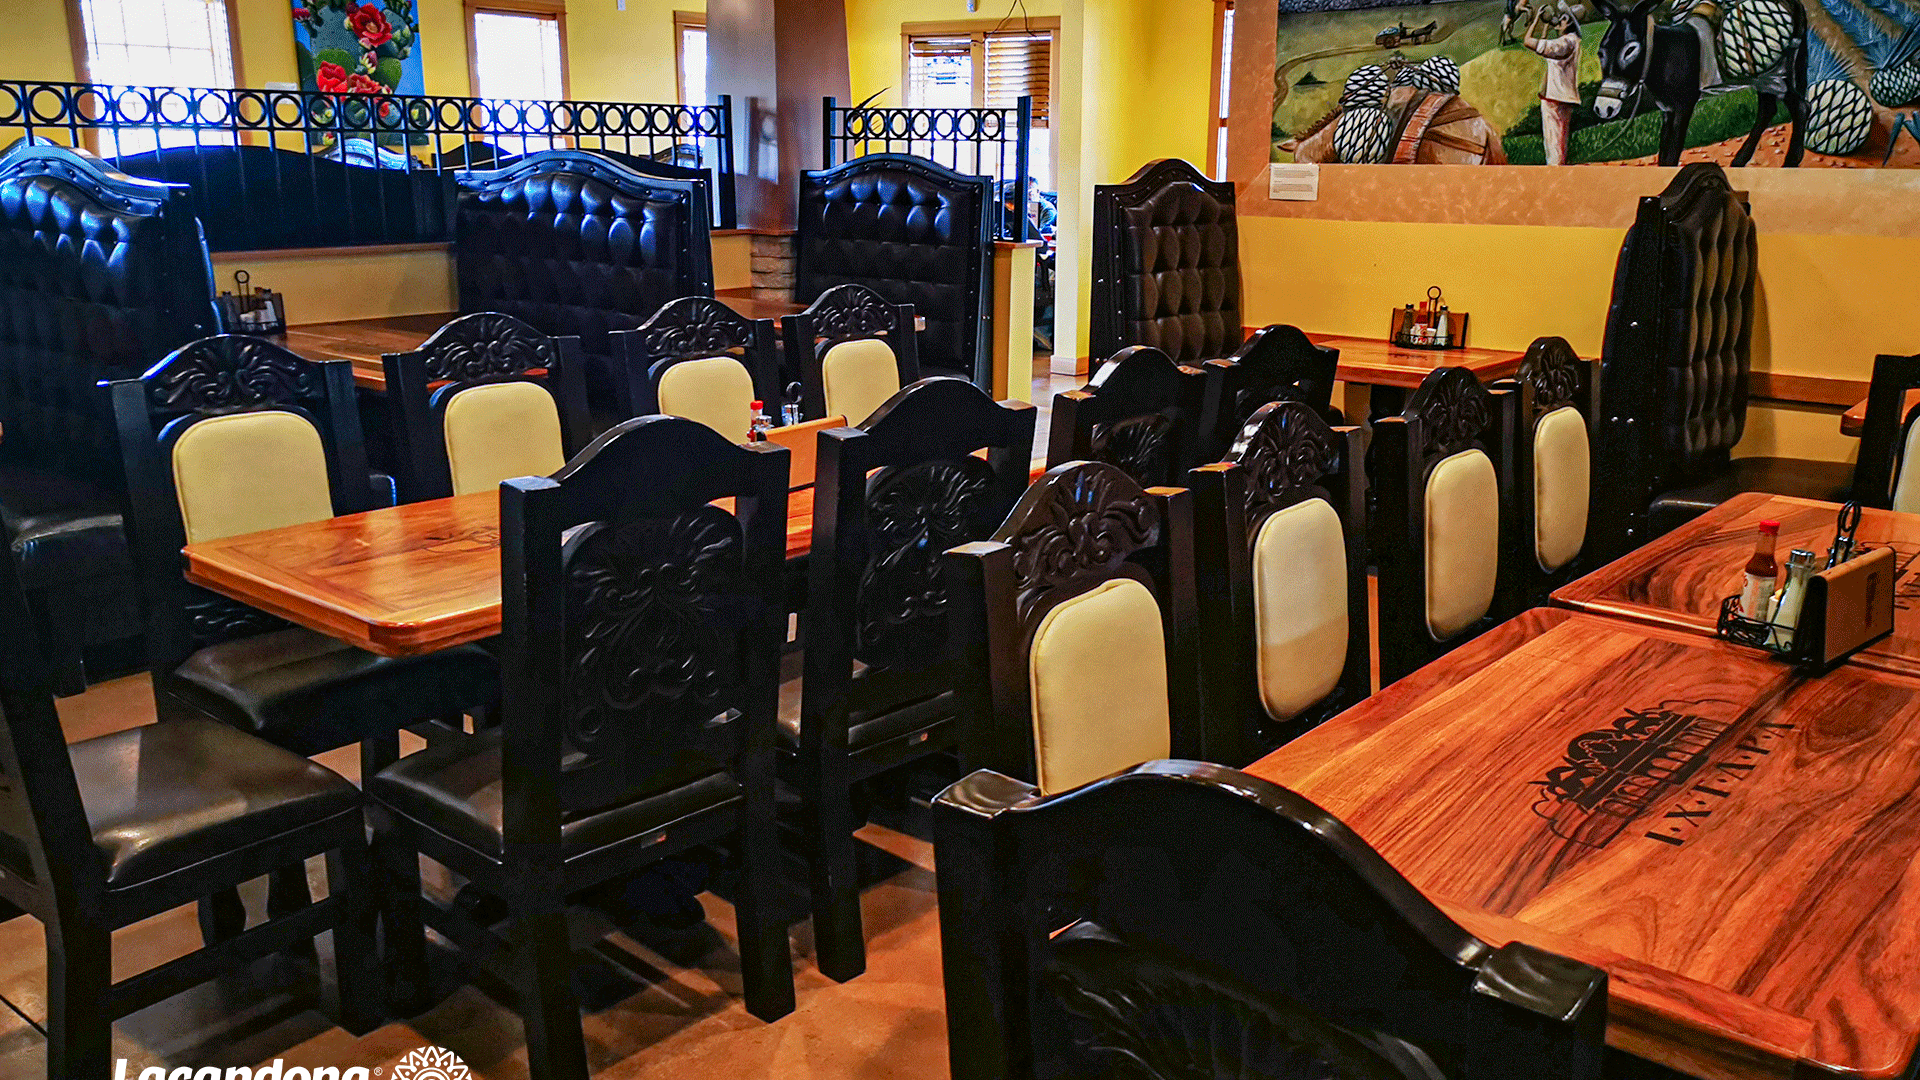 Restaurante mexicano rústico | Muebles Lacandona